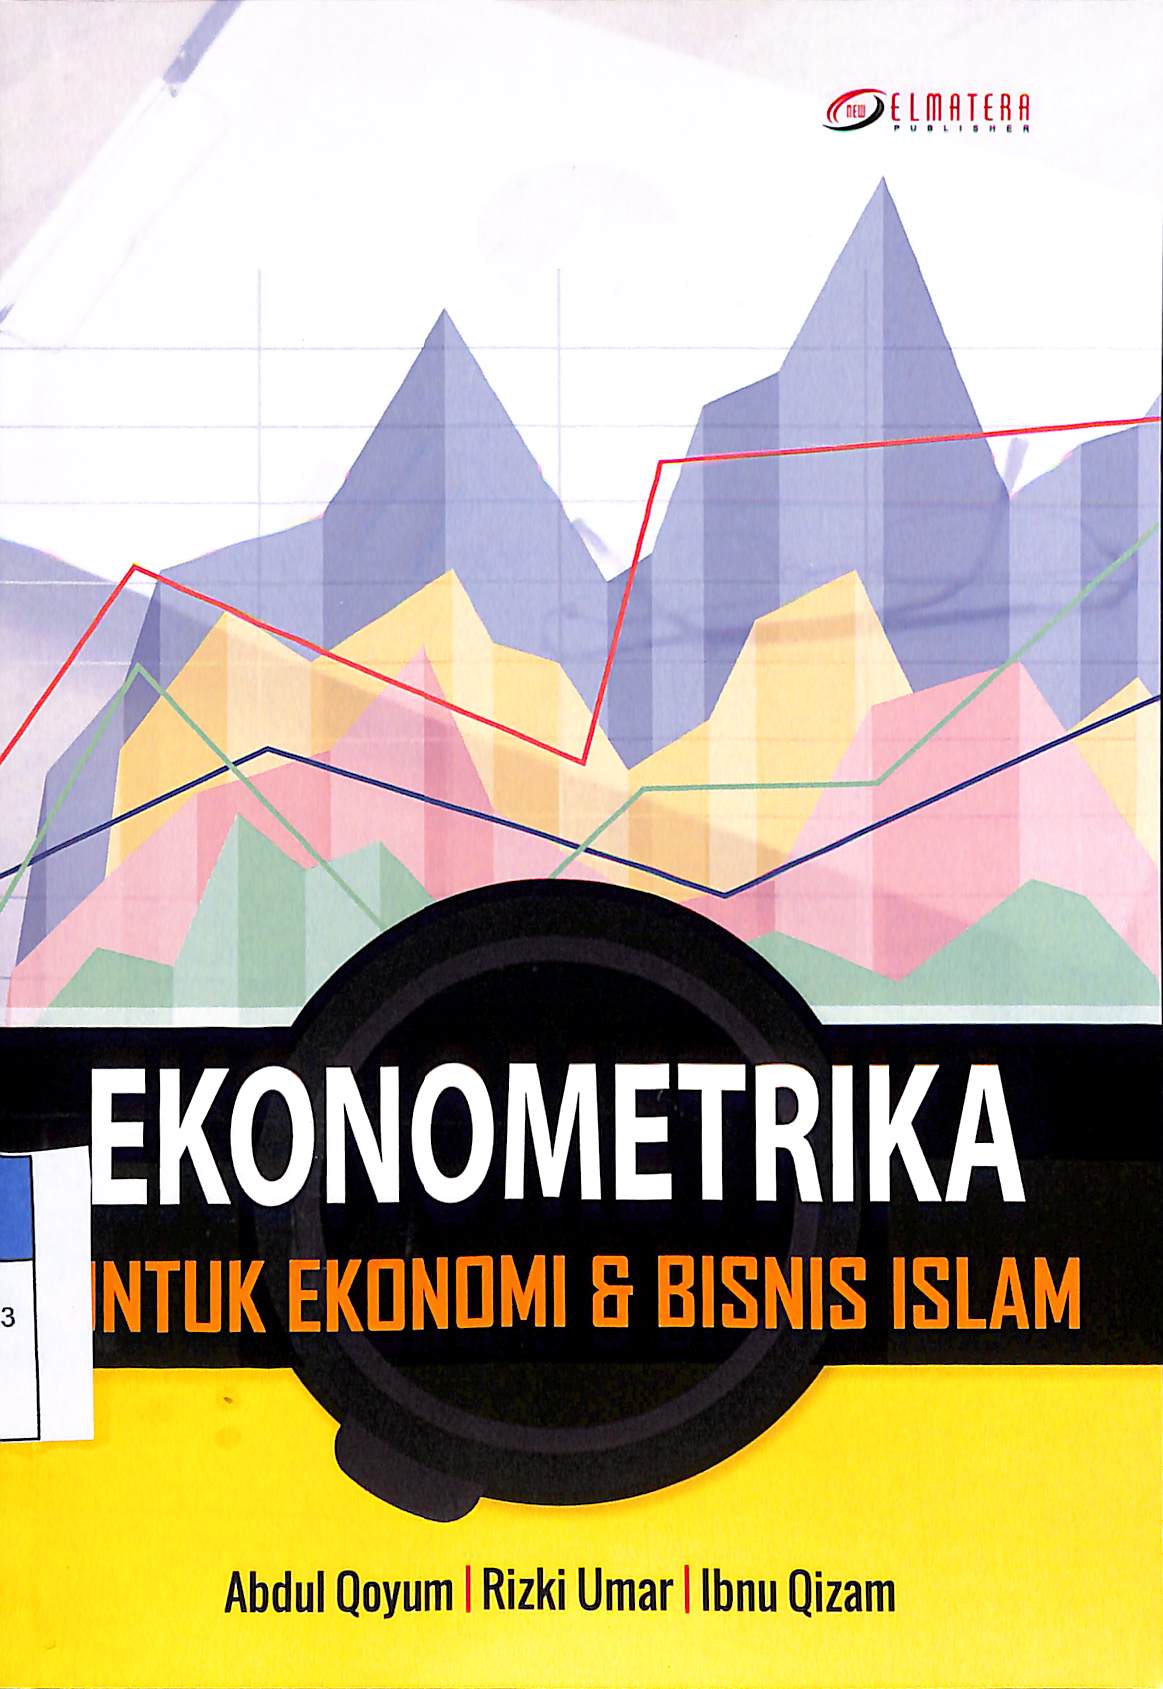 Ekonometrika untuk ekonomi & bisnis Islam